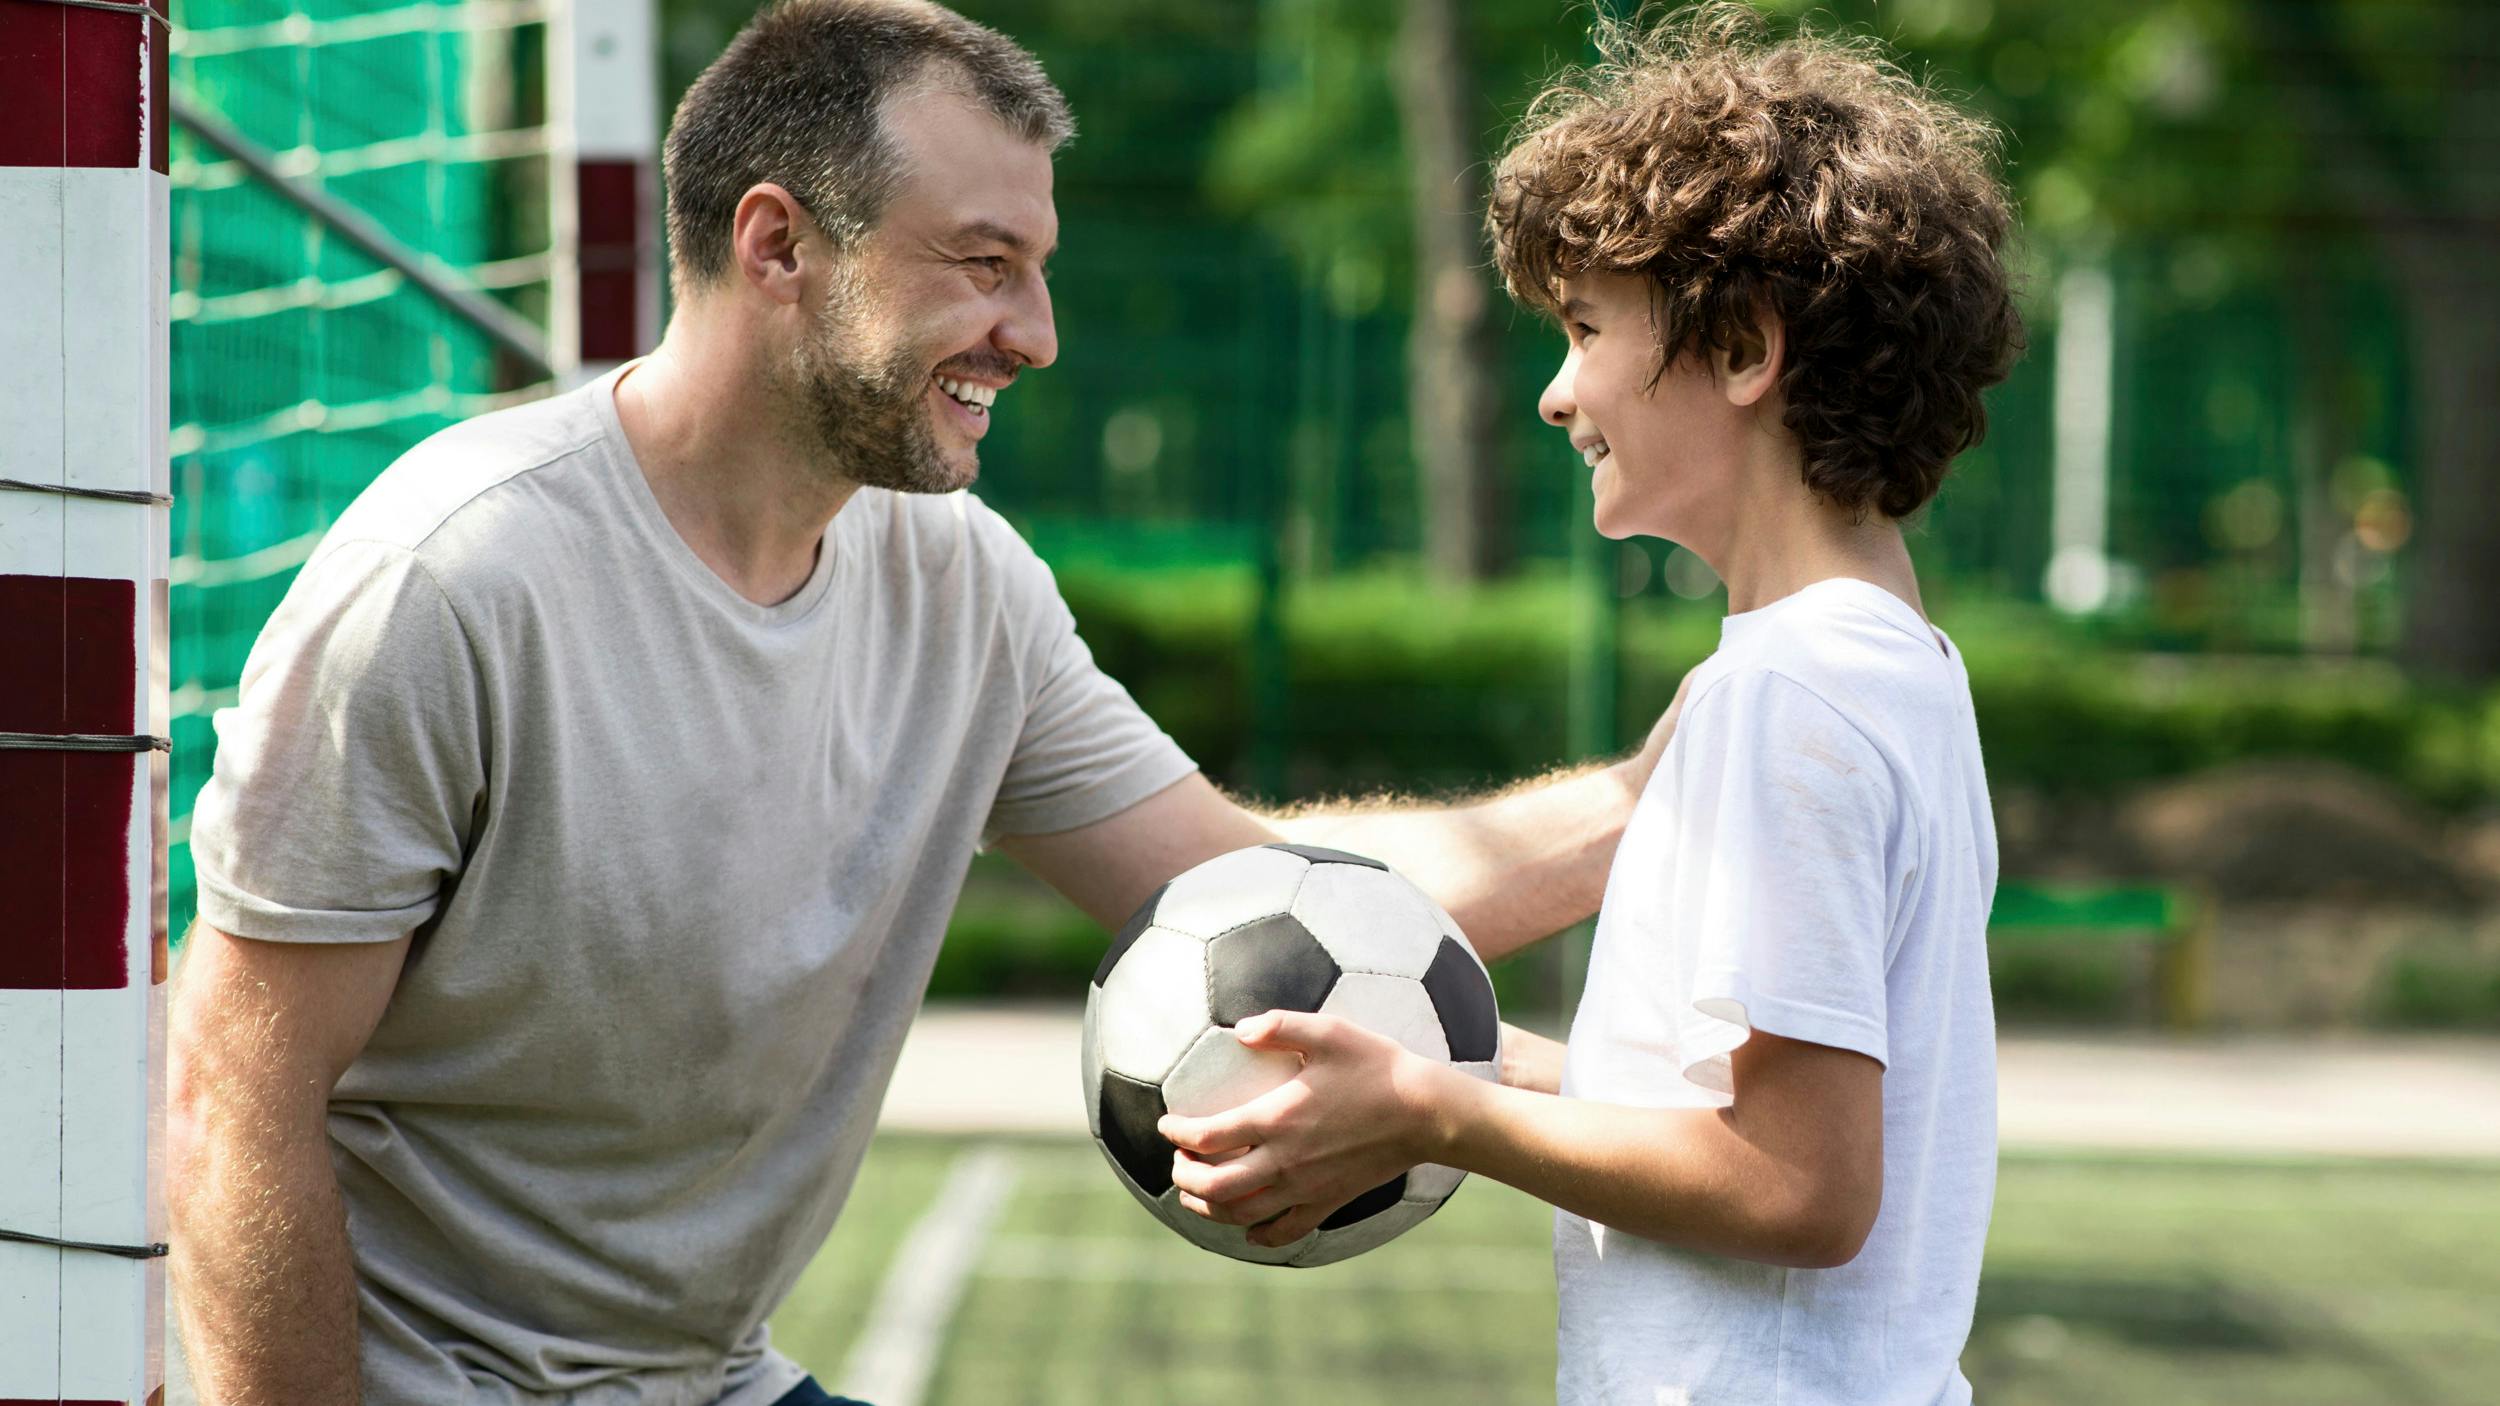 Far ser smilende på sin søn, der holder en fodbold.